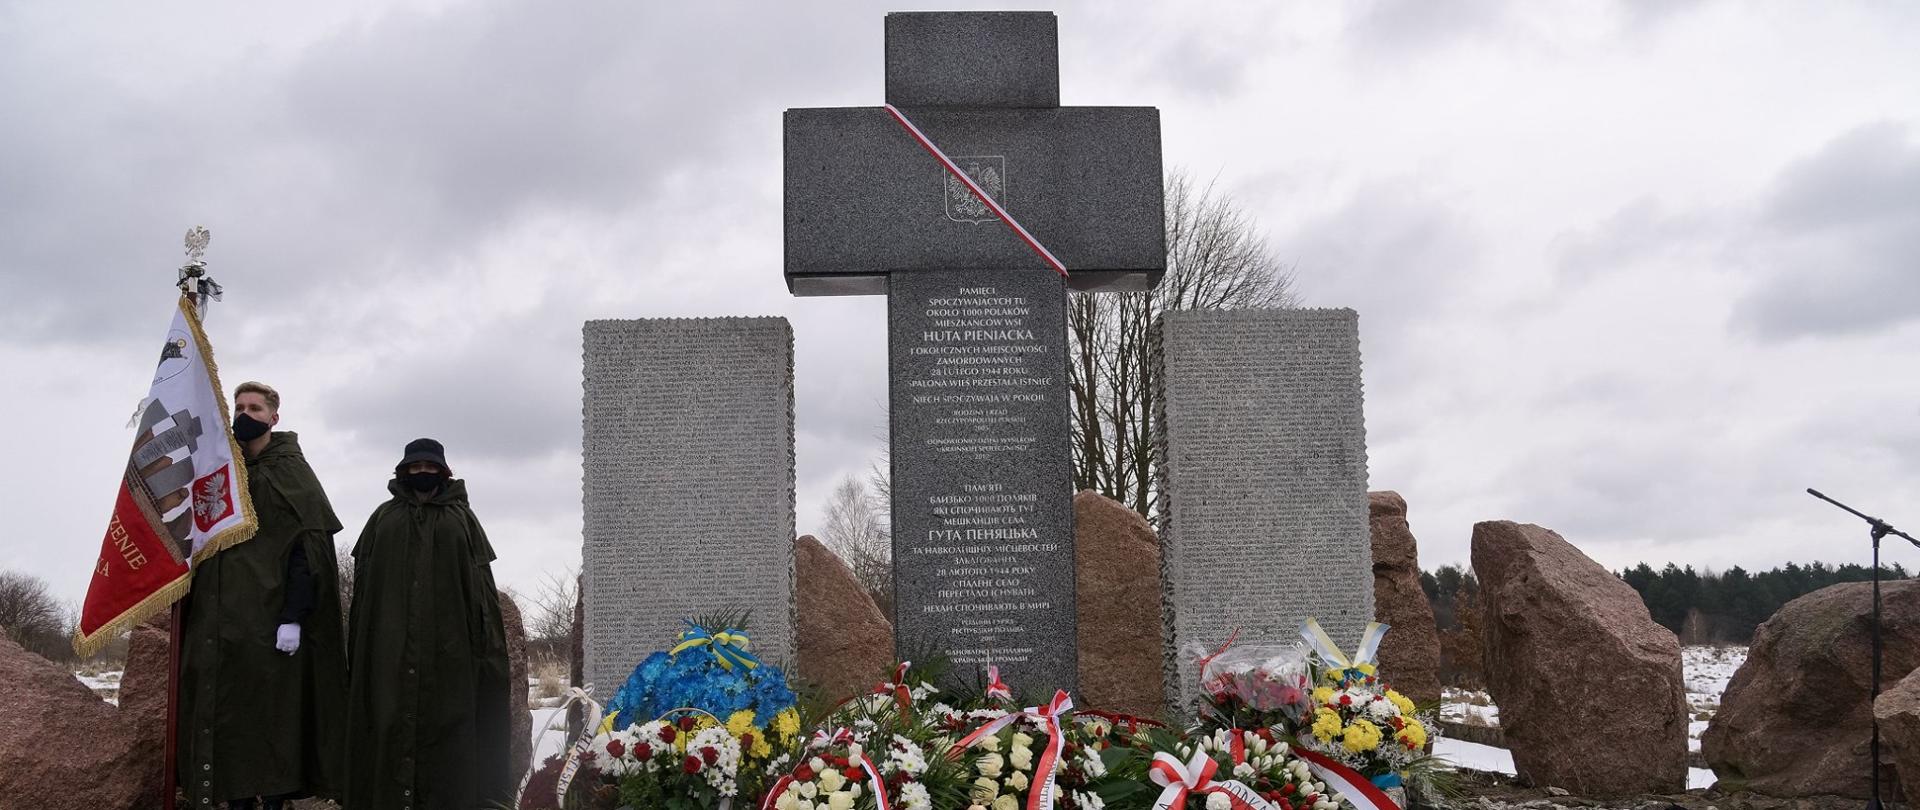 Huta Pieniacka mogiła kilkuset niewinnych Polaków, zamordowanych 28 lutego 1944, Kamienne Monumenty z nazwiskami oraz Granitowy Krzyż, pod którym złożono kwiaty i wieńce.